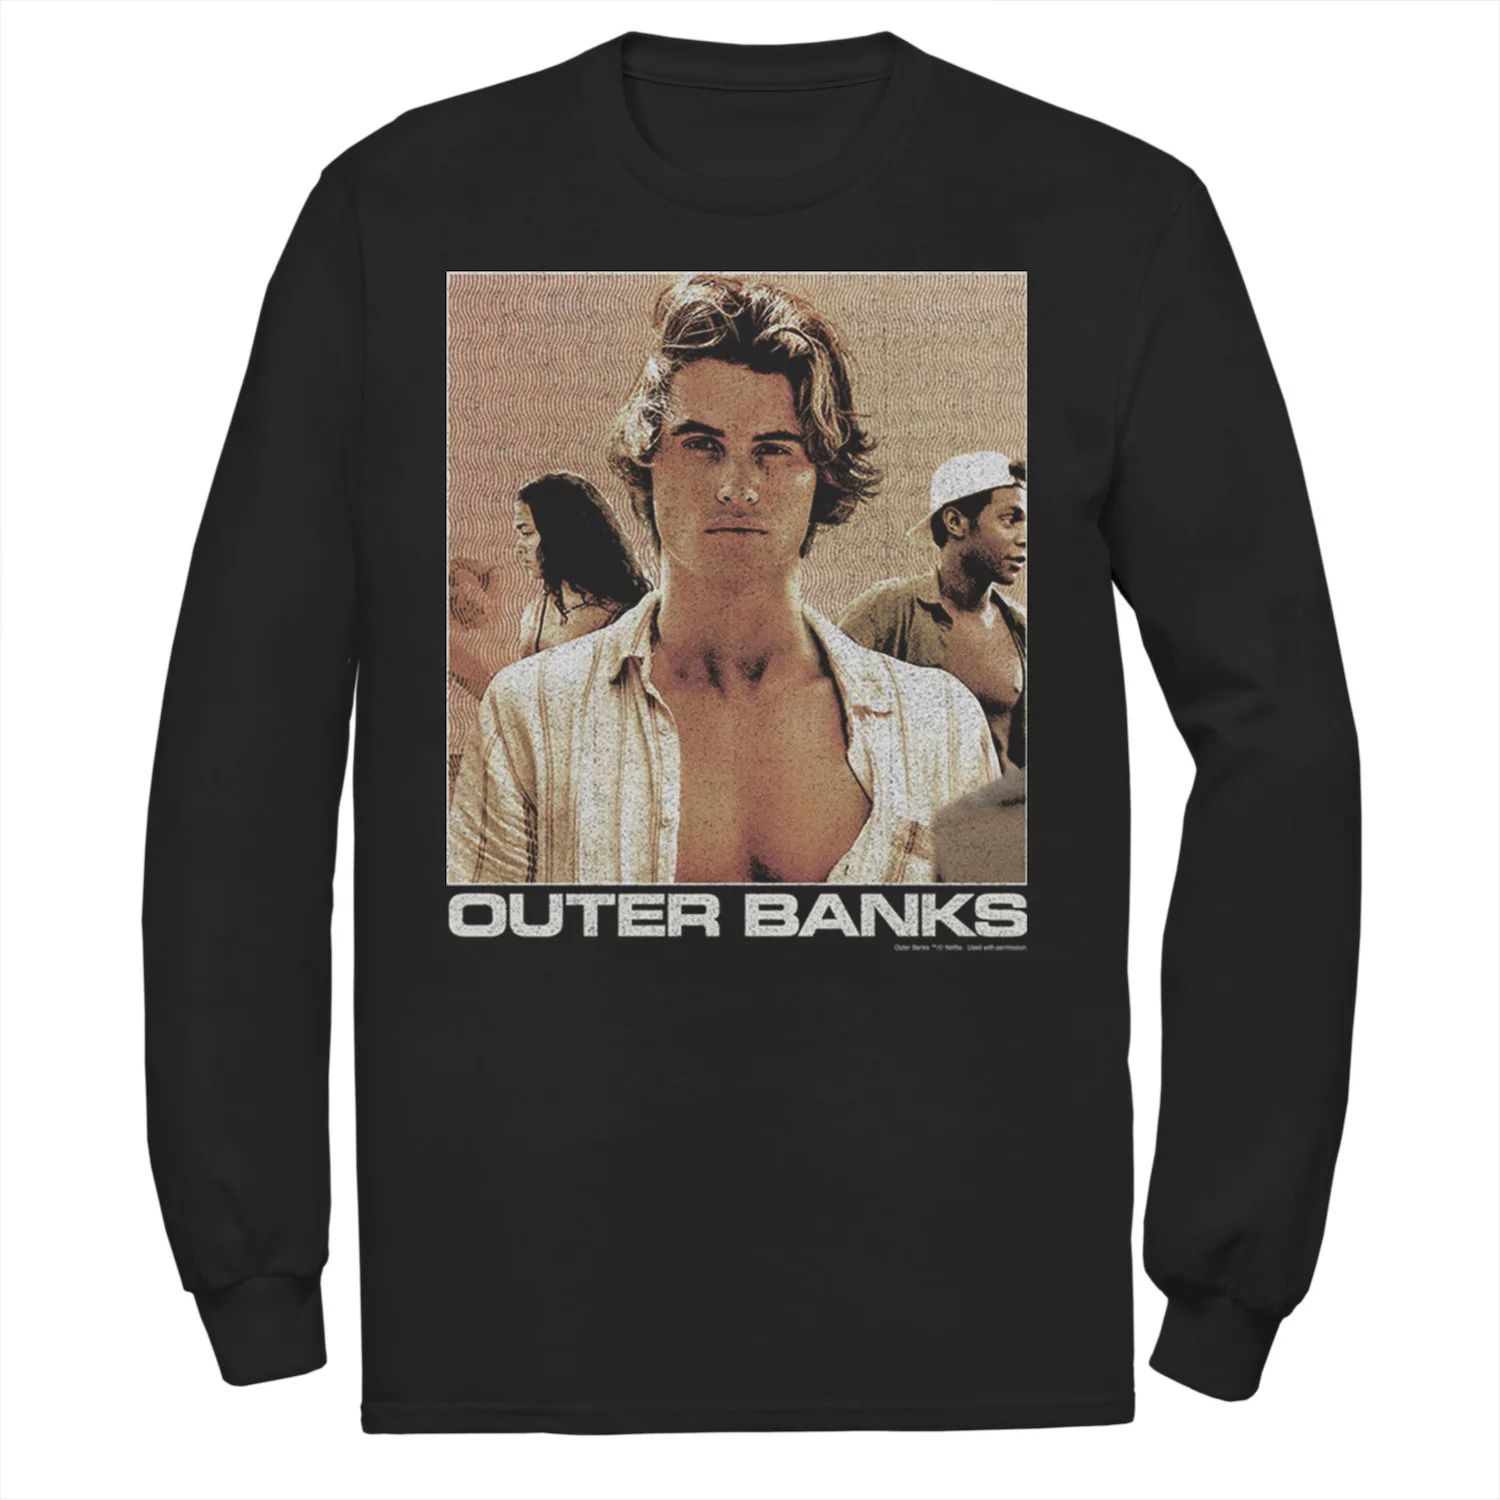 Мужская футболка Outer Banks John B с портретом Licensed Character vintage outer banks john b t shirt men john b sweatshirt outer banks t shirts for men